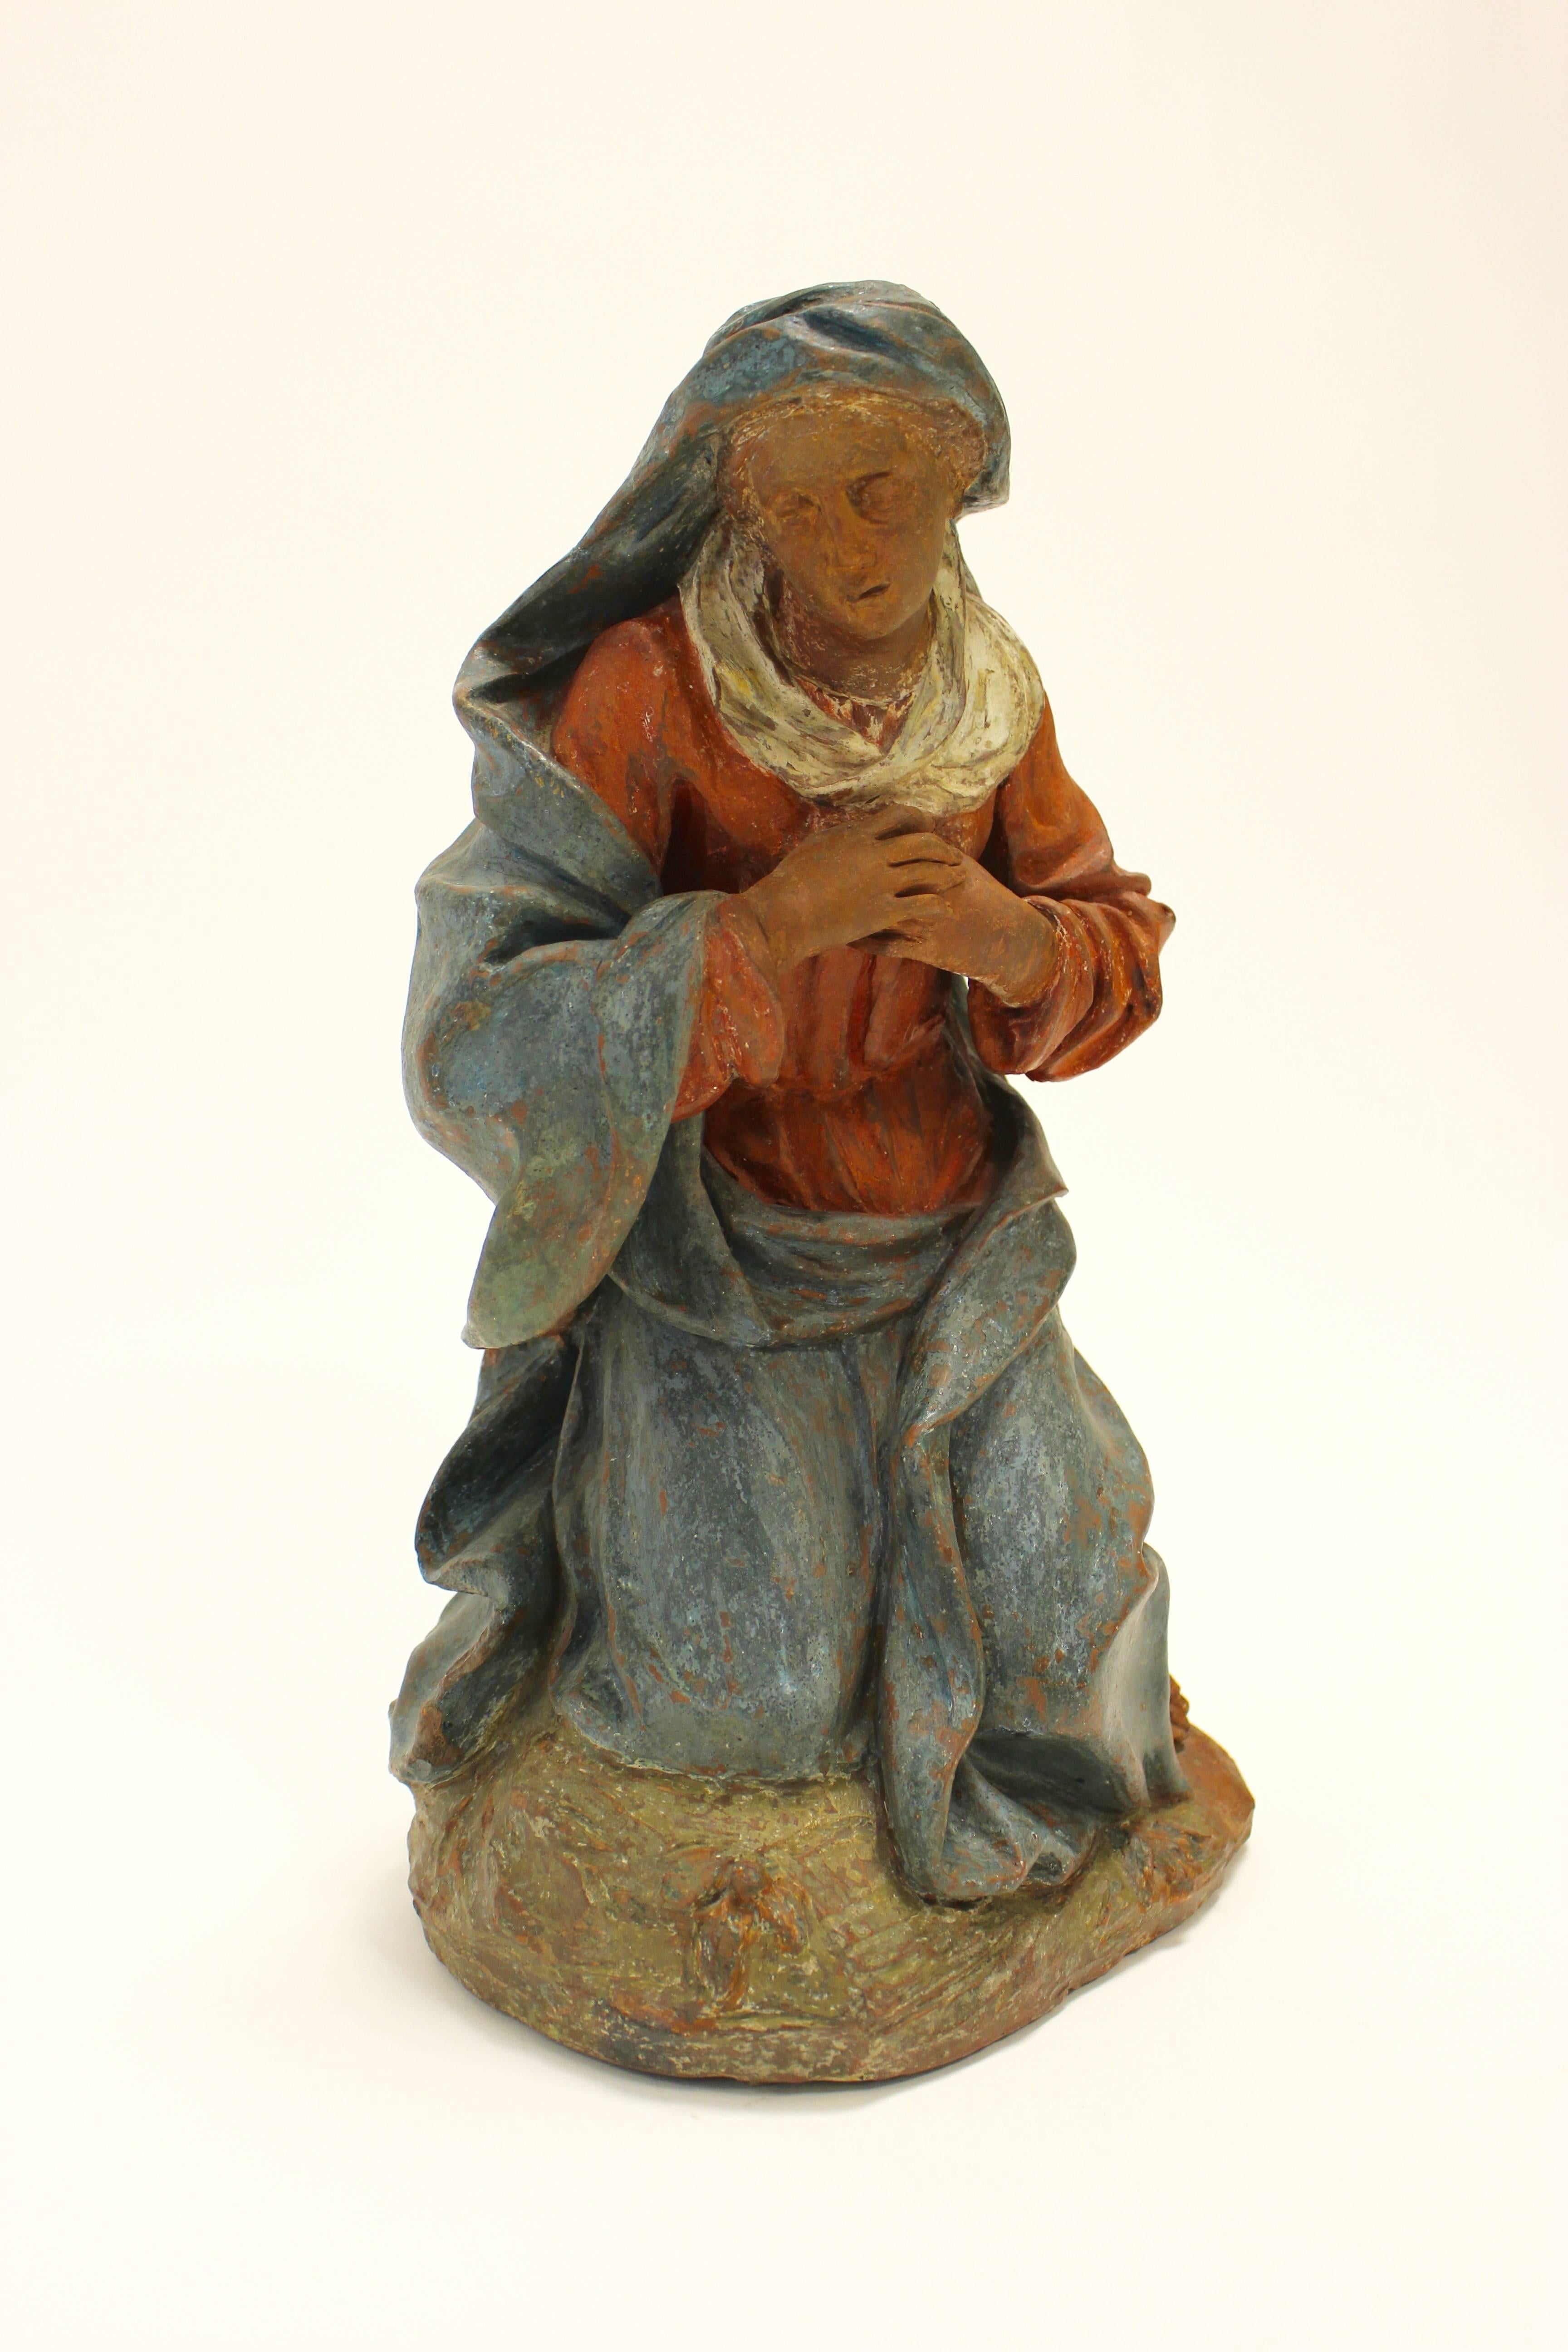 Kontinental bemalte Terrakotta-Skulptur einer knienden Jungfrau in der Art von Angolo di Poli aus dem 17. und 18. Jahrhundert. Diese exquisite Terrakotta-Skulptur zeigt eine ergreifende Darstellung der Jungfrau Maria. Die rote und blaue Kleidung,